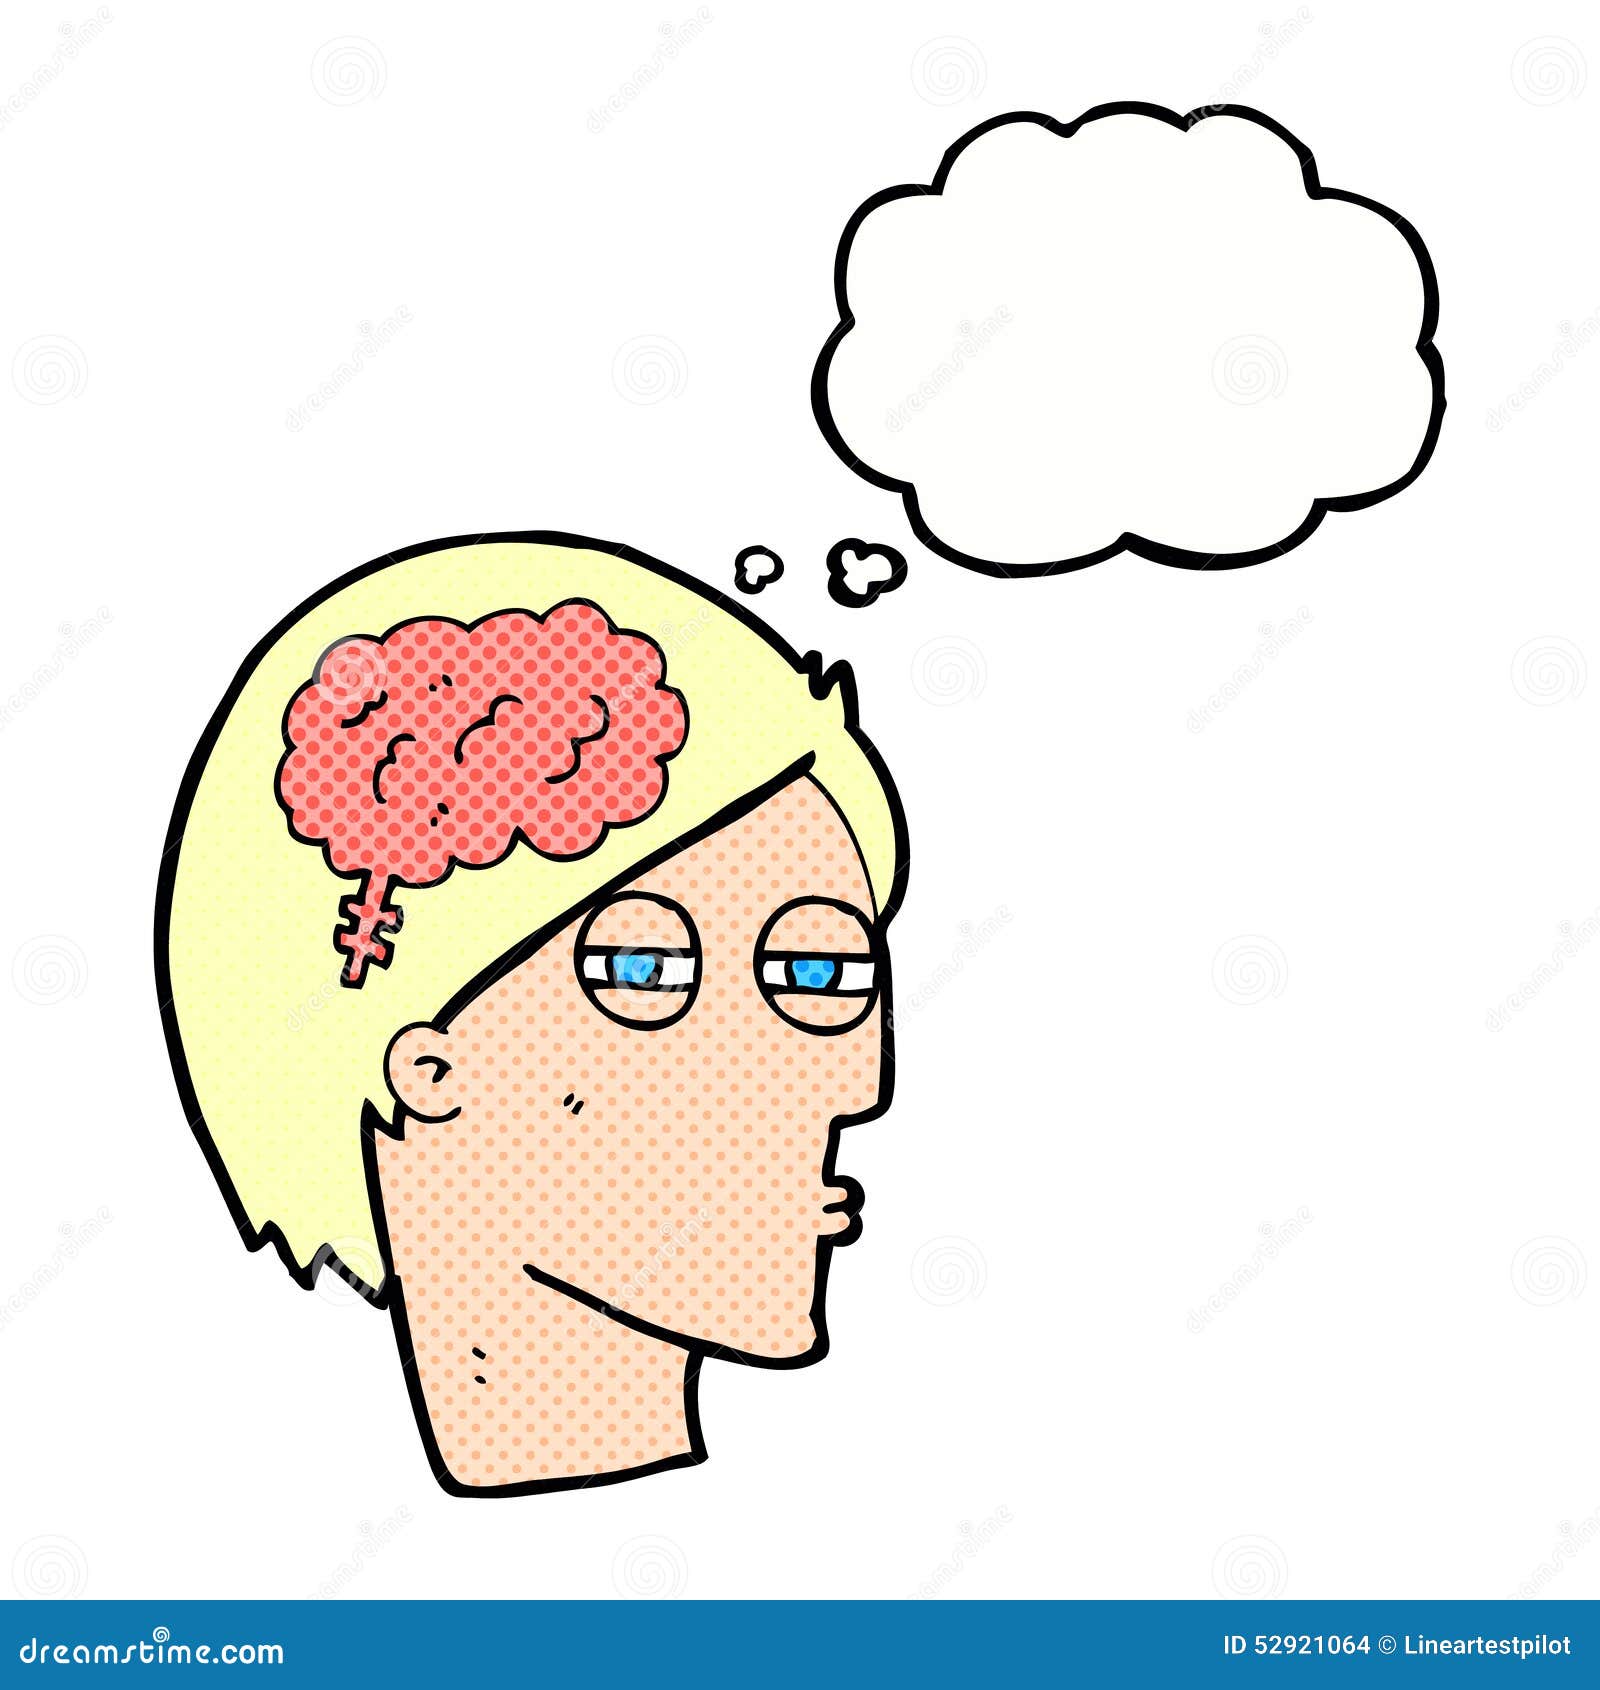 Побуждают мысли. Мысли рисунок. Думающая голова. Мозг думает. Думающий человек мультяшный.